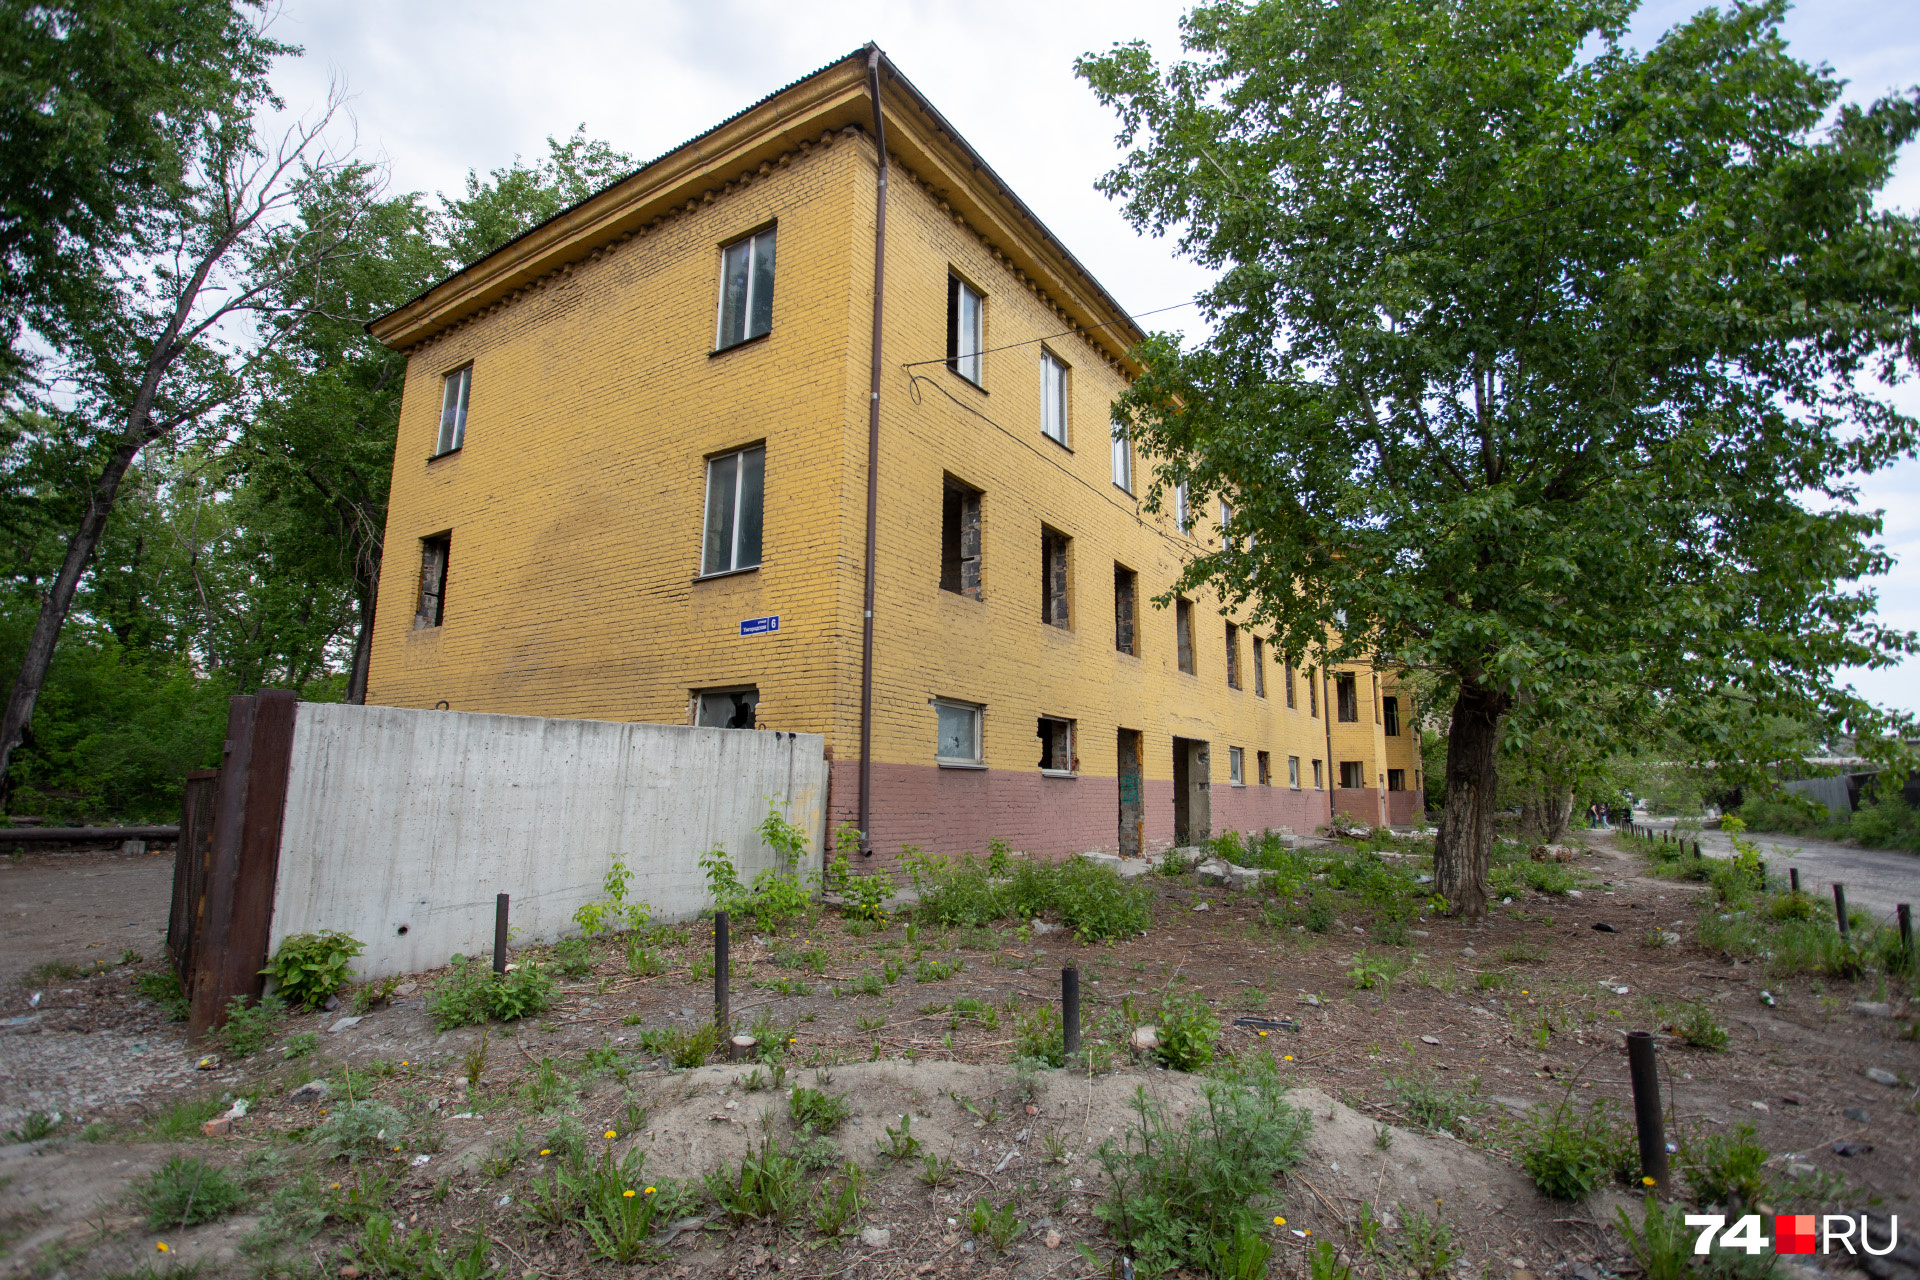 Переселили и соседнюю улицу — Сормовскую, там жилые здания тоже переделывают под офисы или производственные цеха